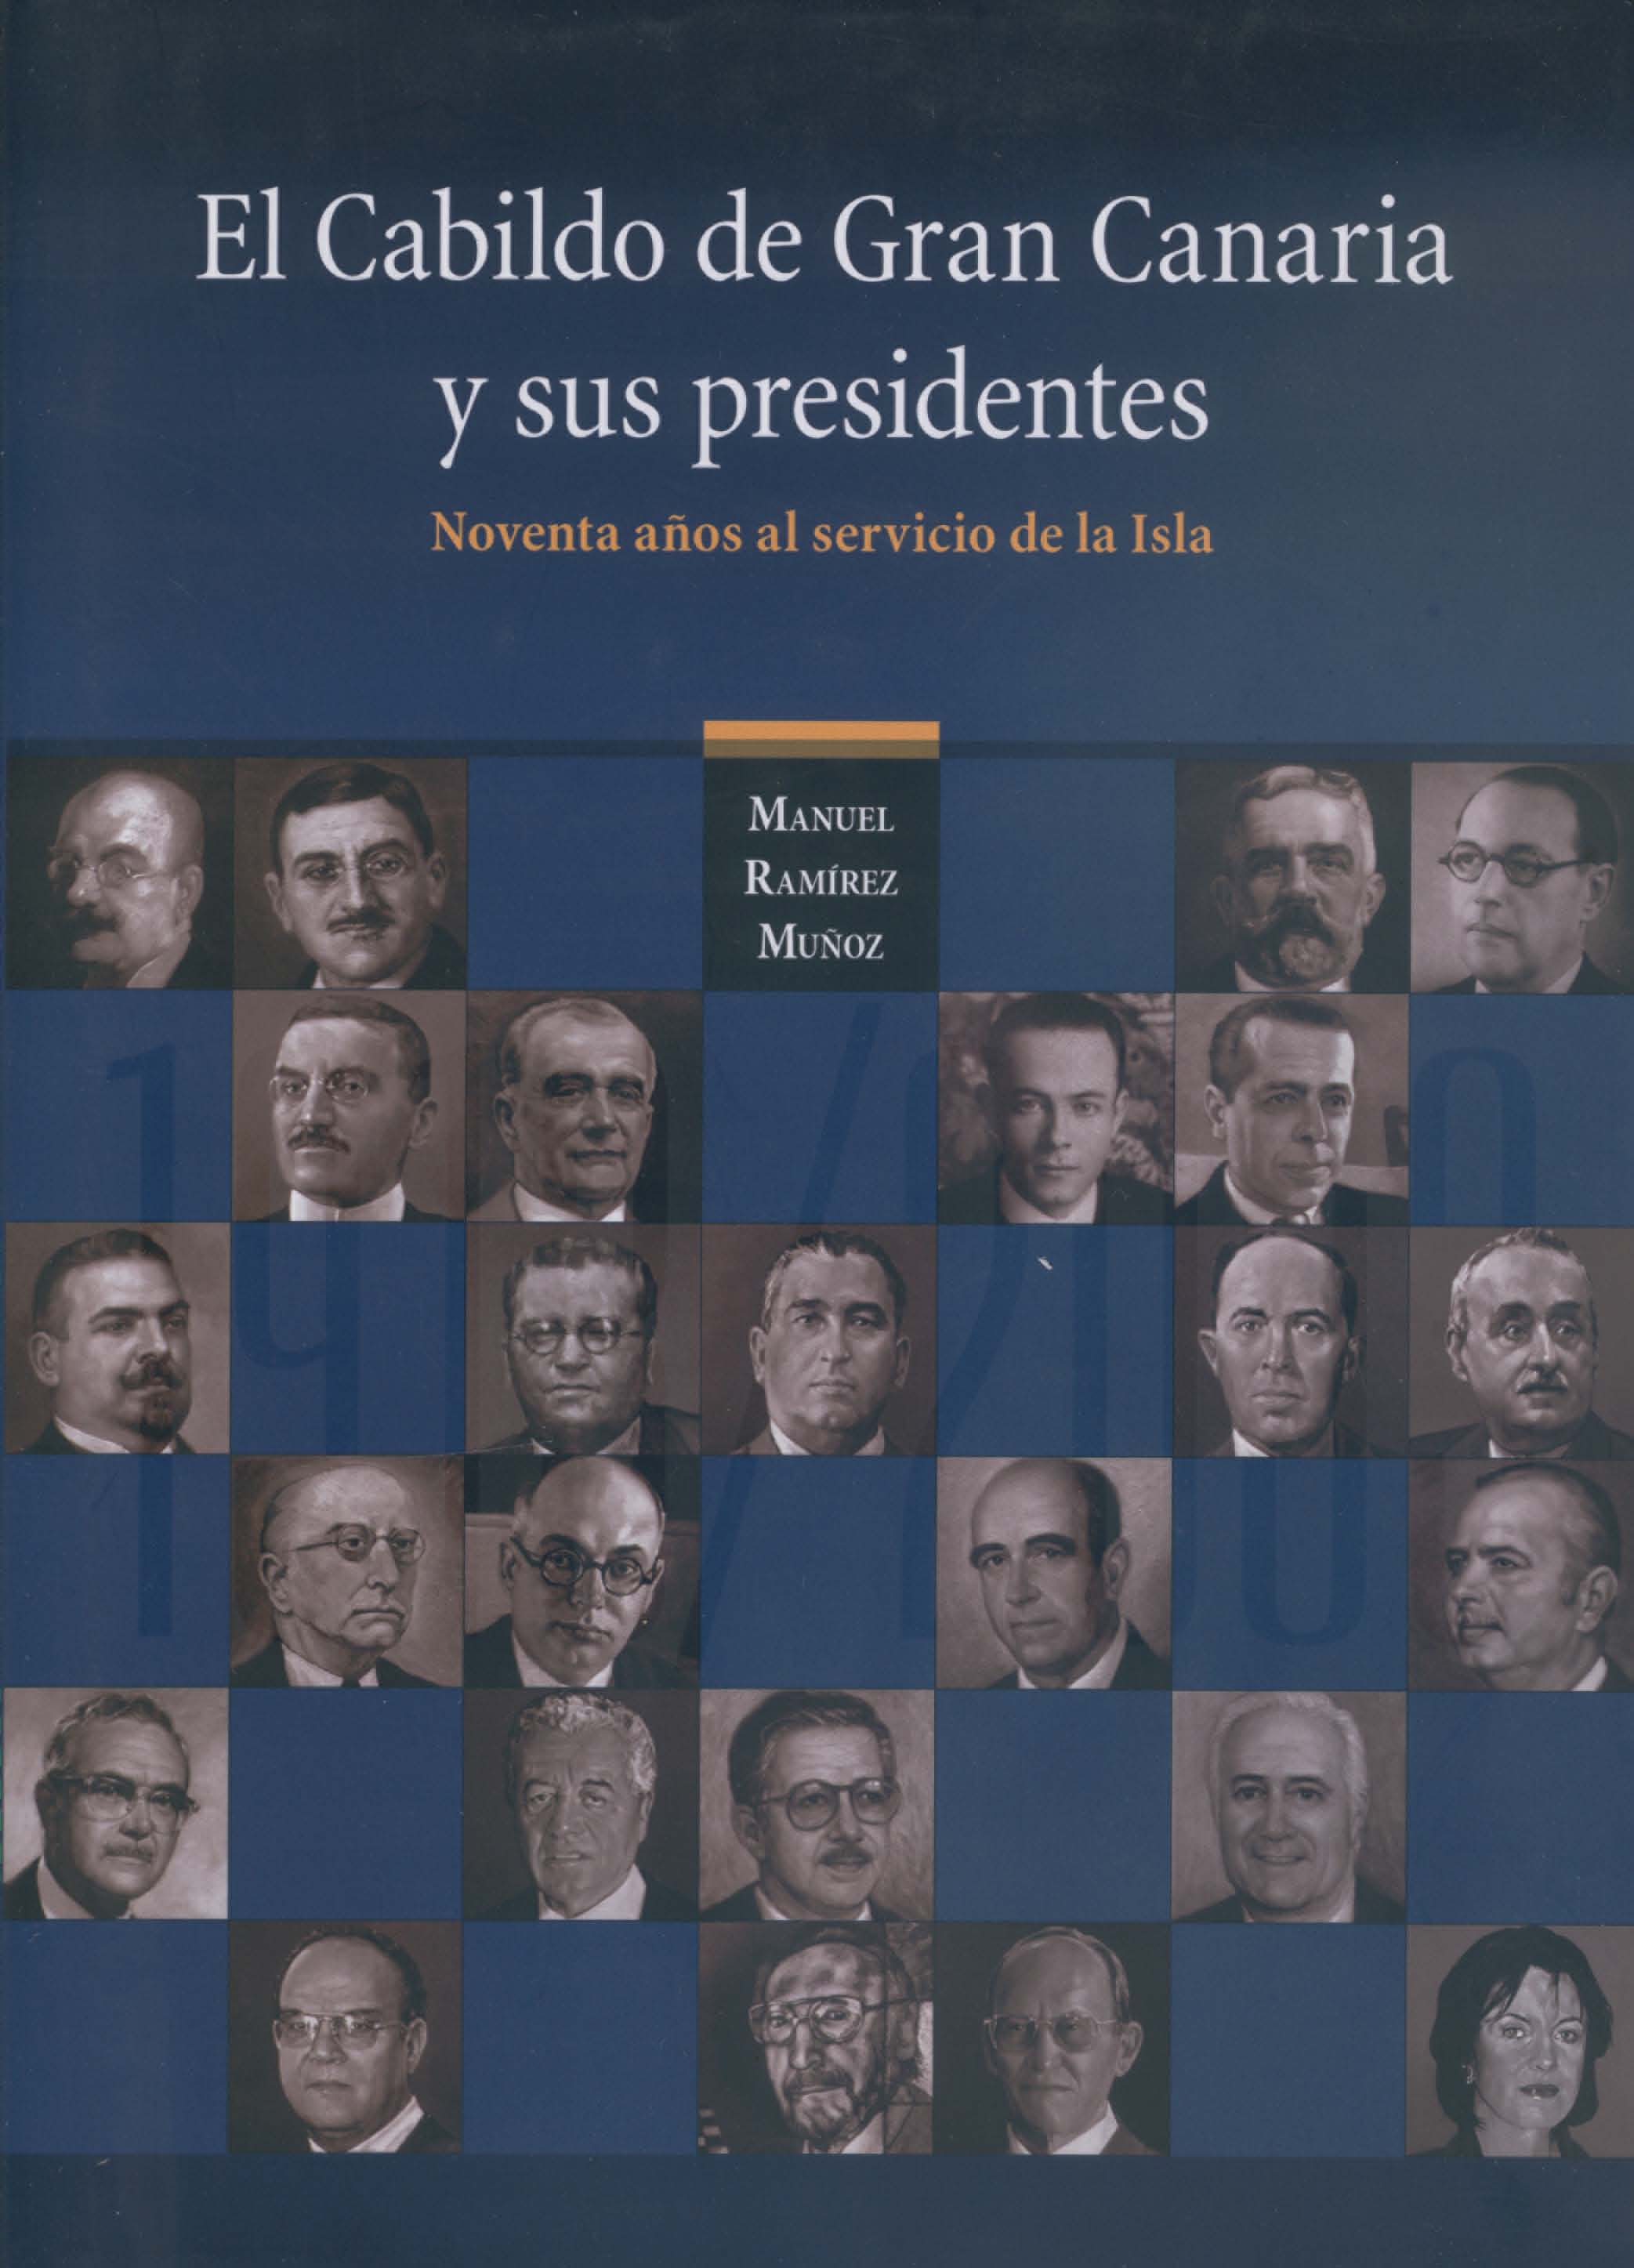 El Cabildo de Gran Canaria y sus presidentes